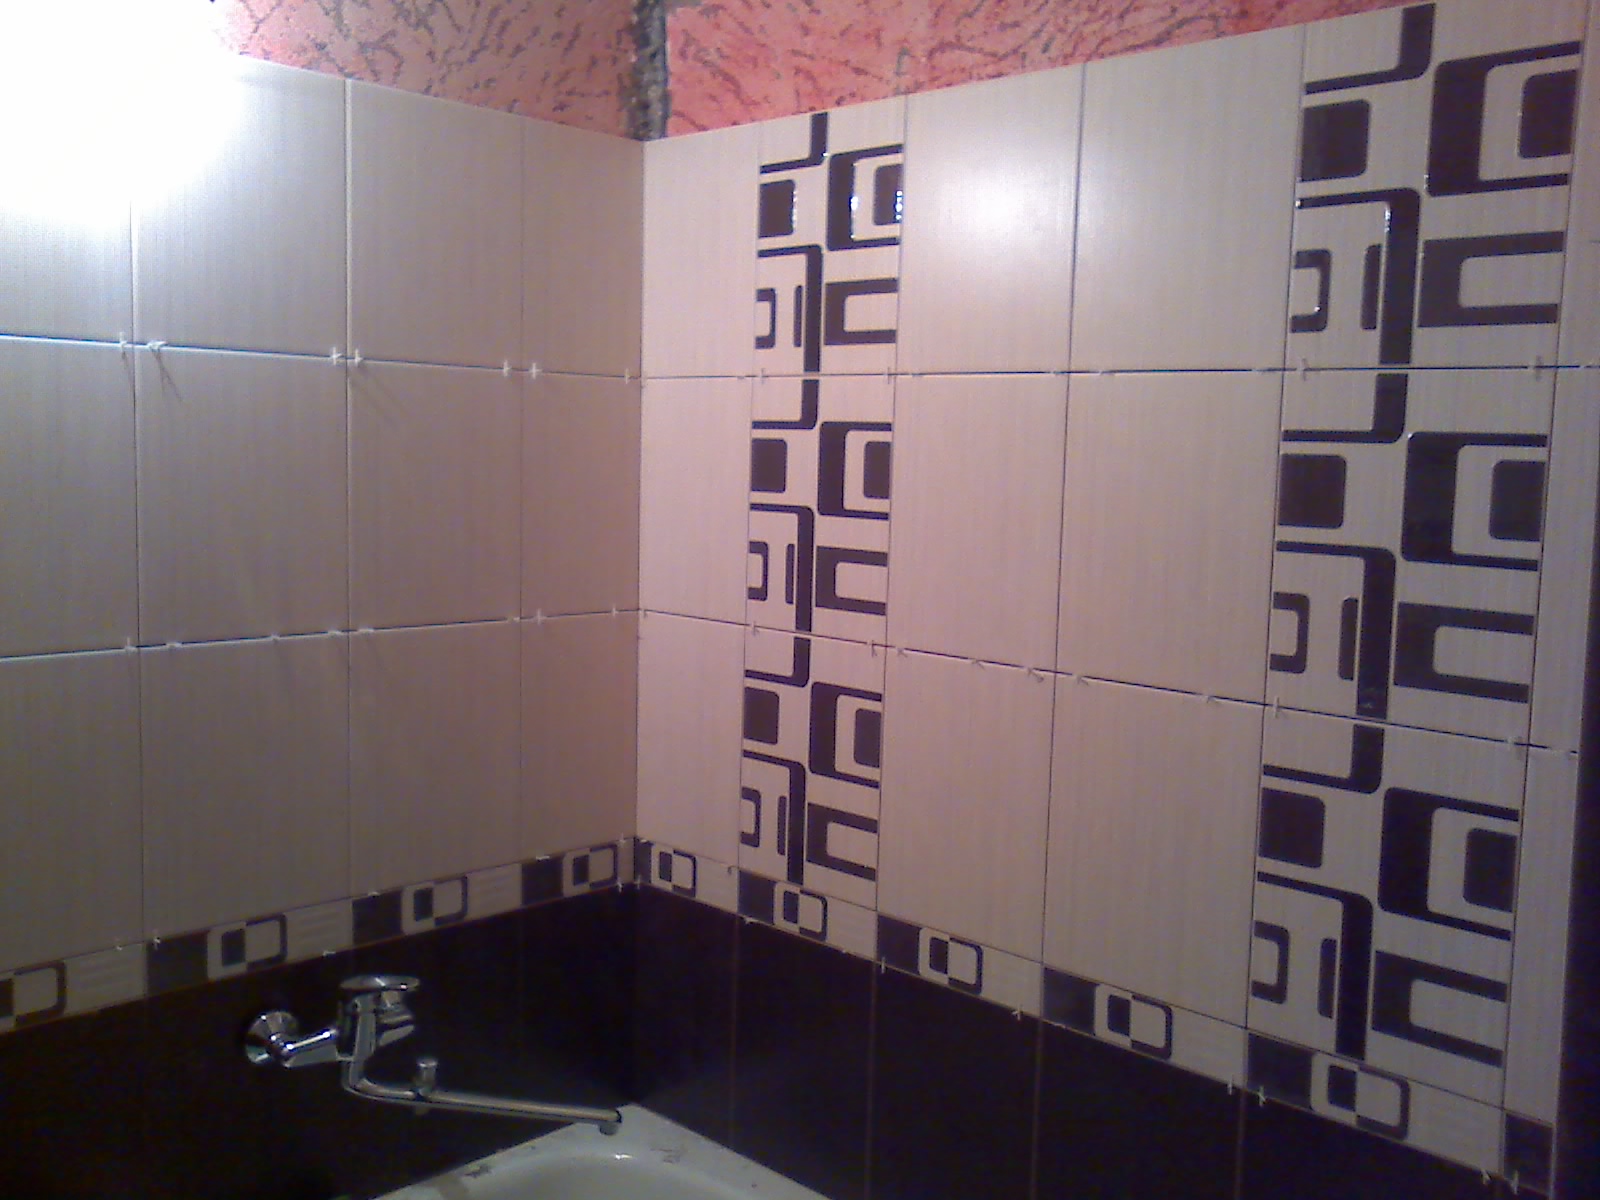 Укладка плитки ванная комната стены. Укладка плитки в ванной. Варианты укладки плитки в ванной. Укладка плитки в ванной на стены. Красивая укладка плитки на стену.